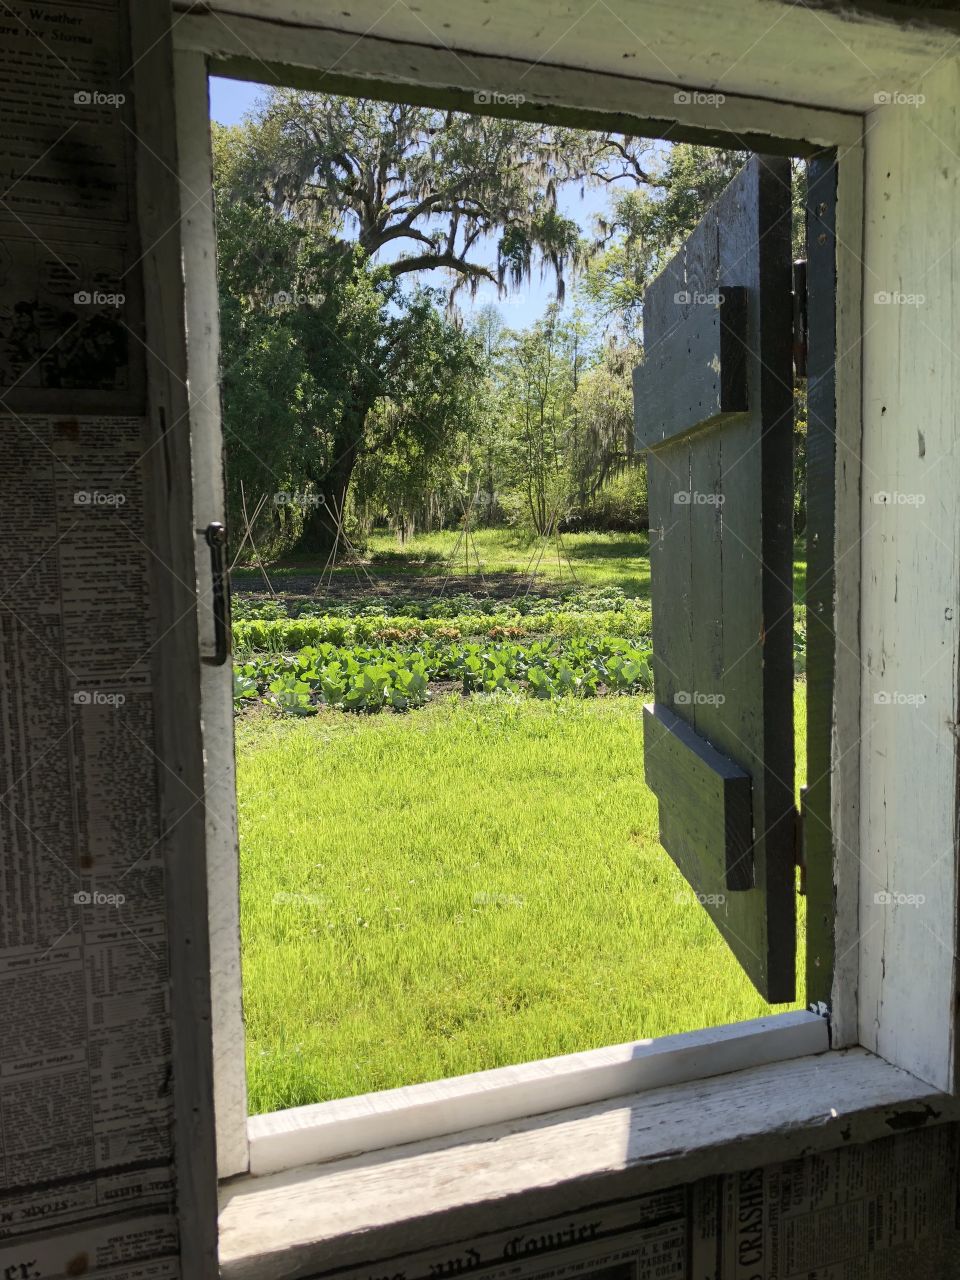 Slave quarters, Magnolia plantation, South Carolina